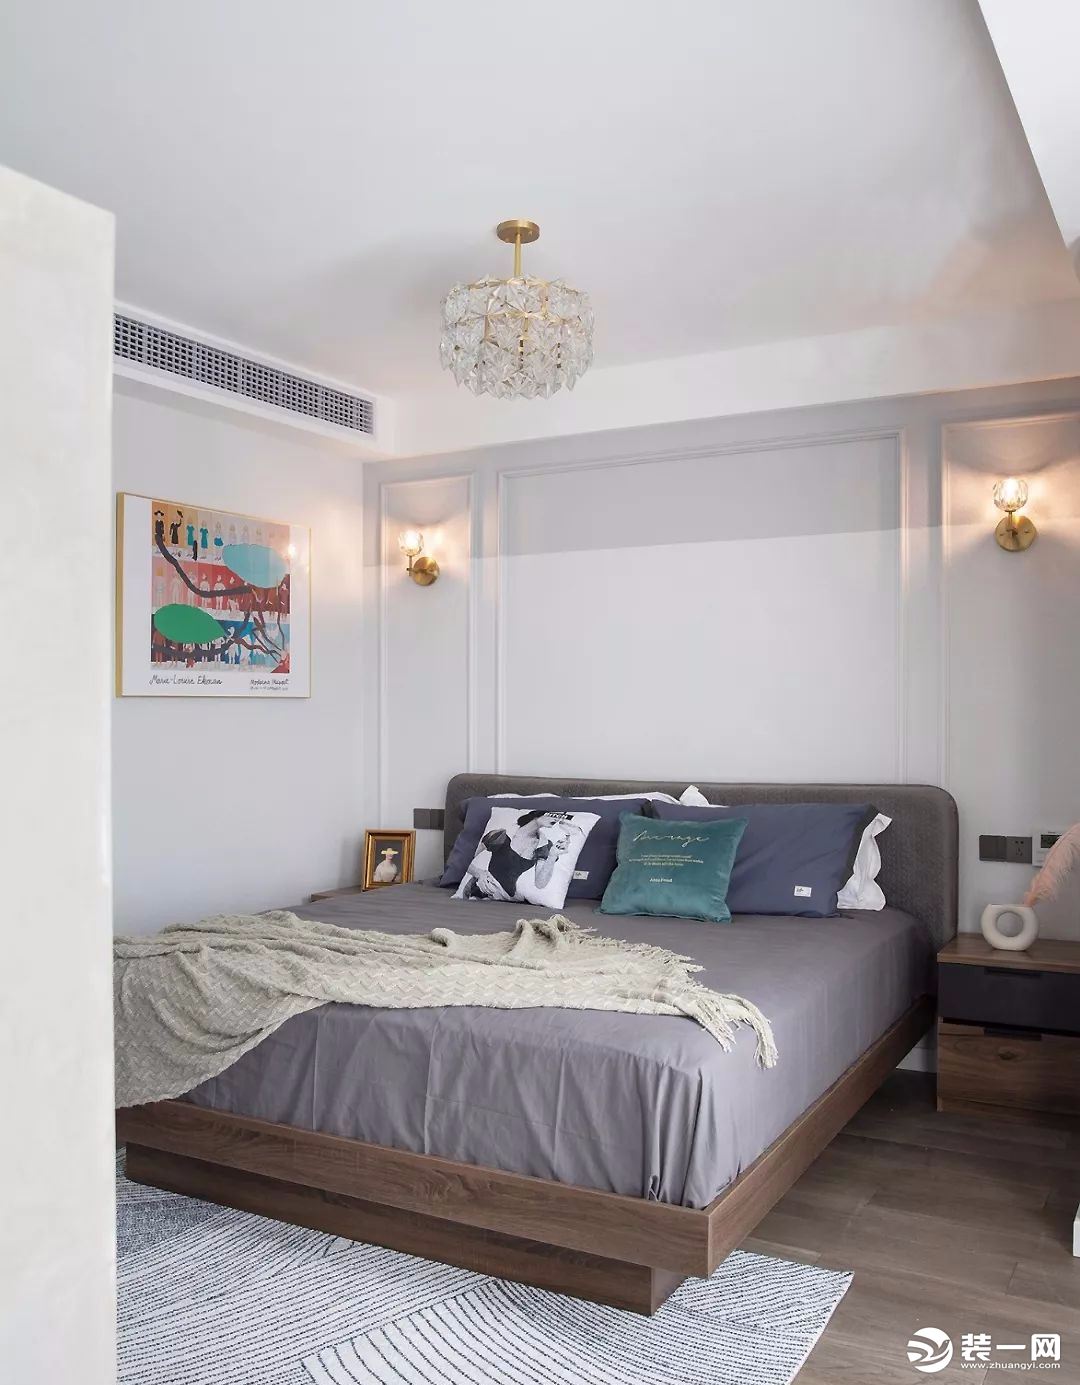 床头背景墙以对称壁灯为界限采用拼色设计，柔和的划分提升空间气质，不会给人视觉压力感。